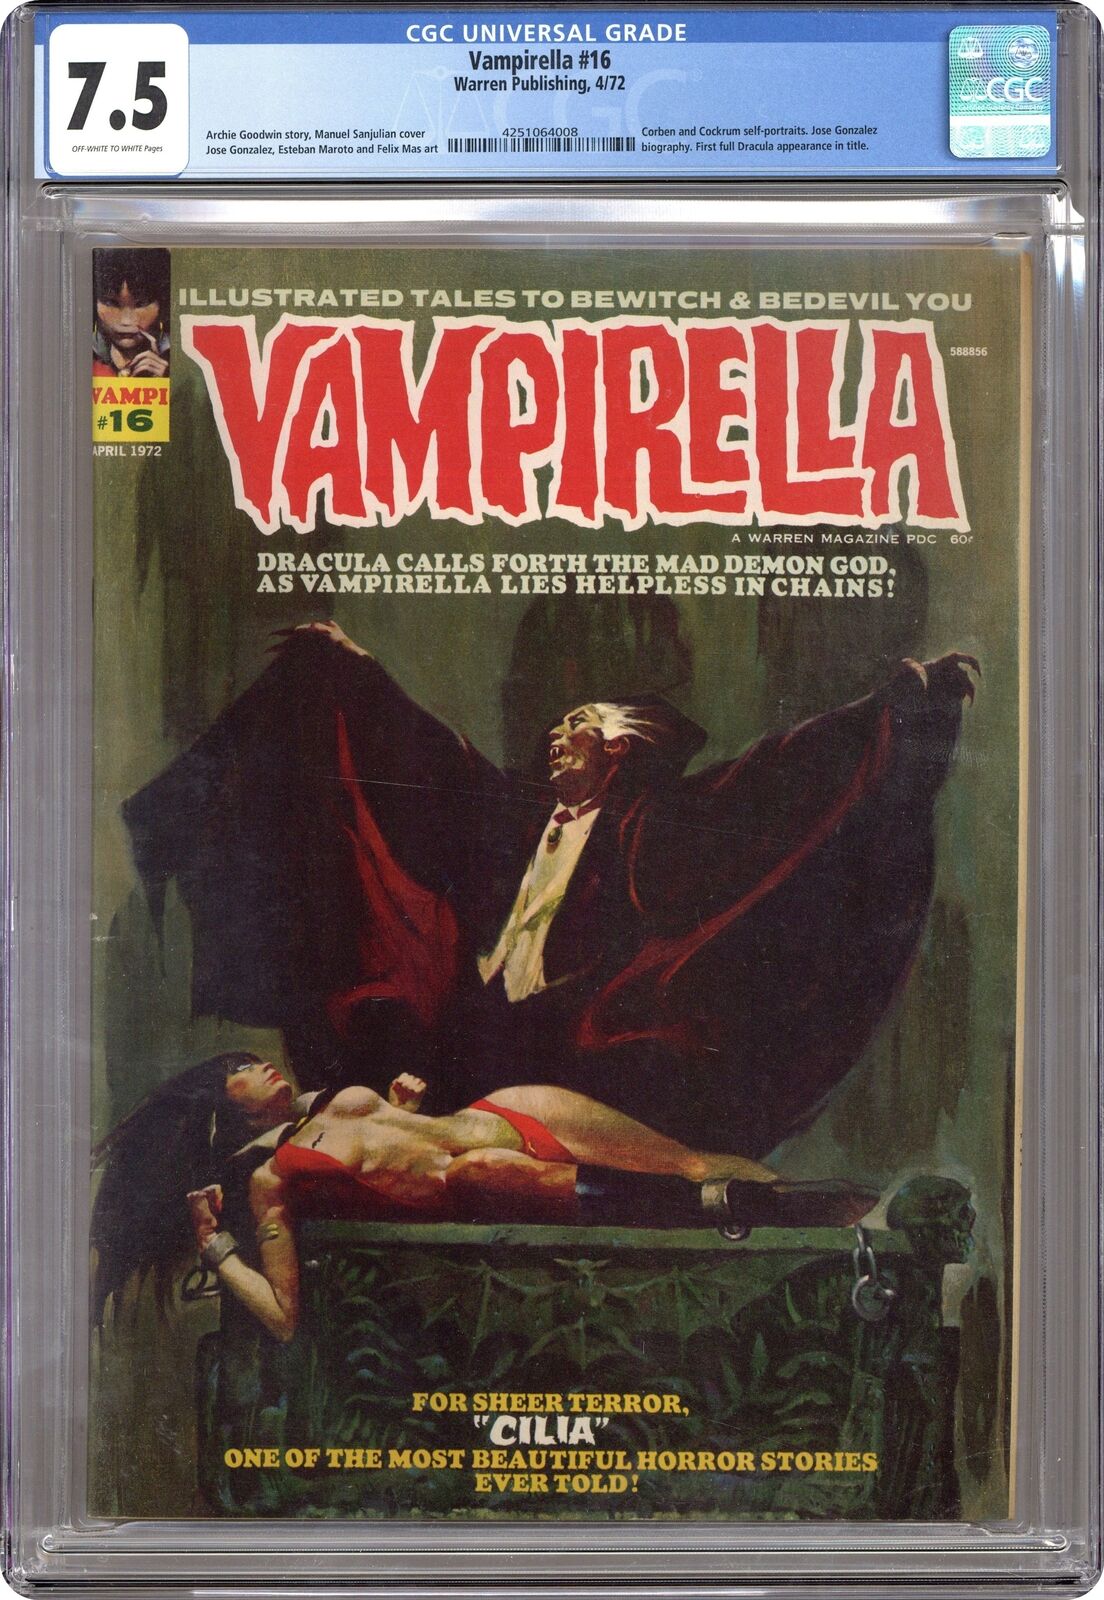 Vampirella #16 CGC 7.5 1972 4251064008